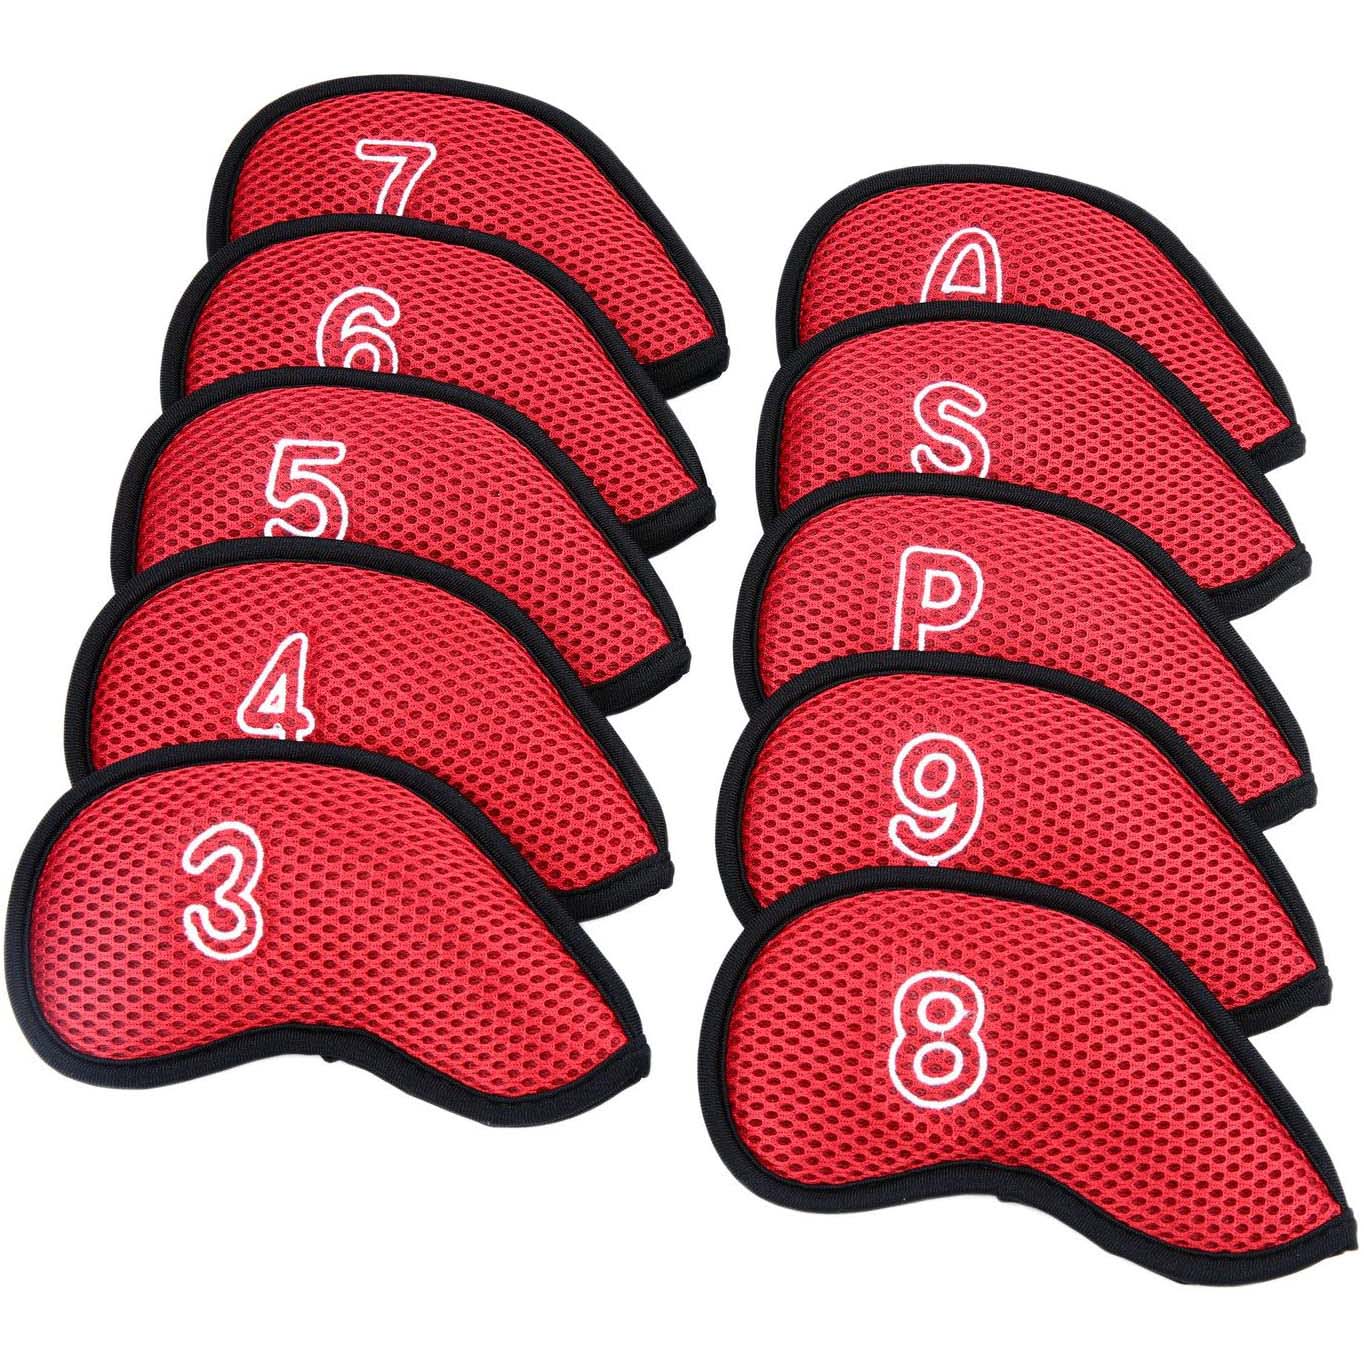 GGR ทนทานกอล์ฟพัตเตอร์ถุงใส่หัวไม้กอล์ฟ Protector กรณีการออกแบบหมายเลข3,4,5,6,7,8,9,P,S,ฝาครอบป้องกันถุงคลุมหัวไม้กอล์ฟกอล์ฟครอบคลุมเหล็กชุด Headcovers กอล์ฟกอล์ฟอุปกรณ์เสริม